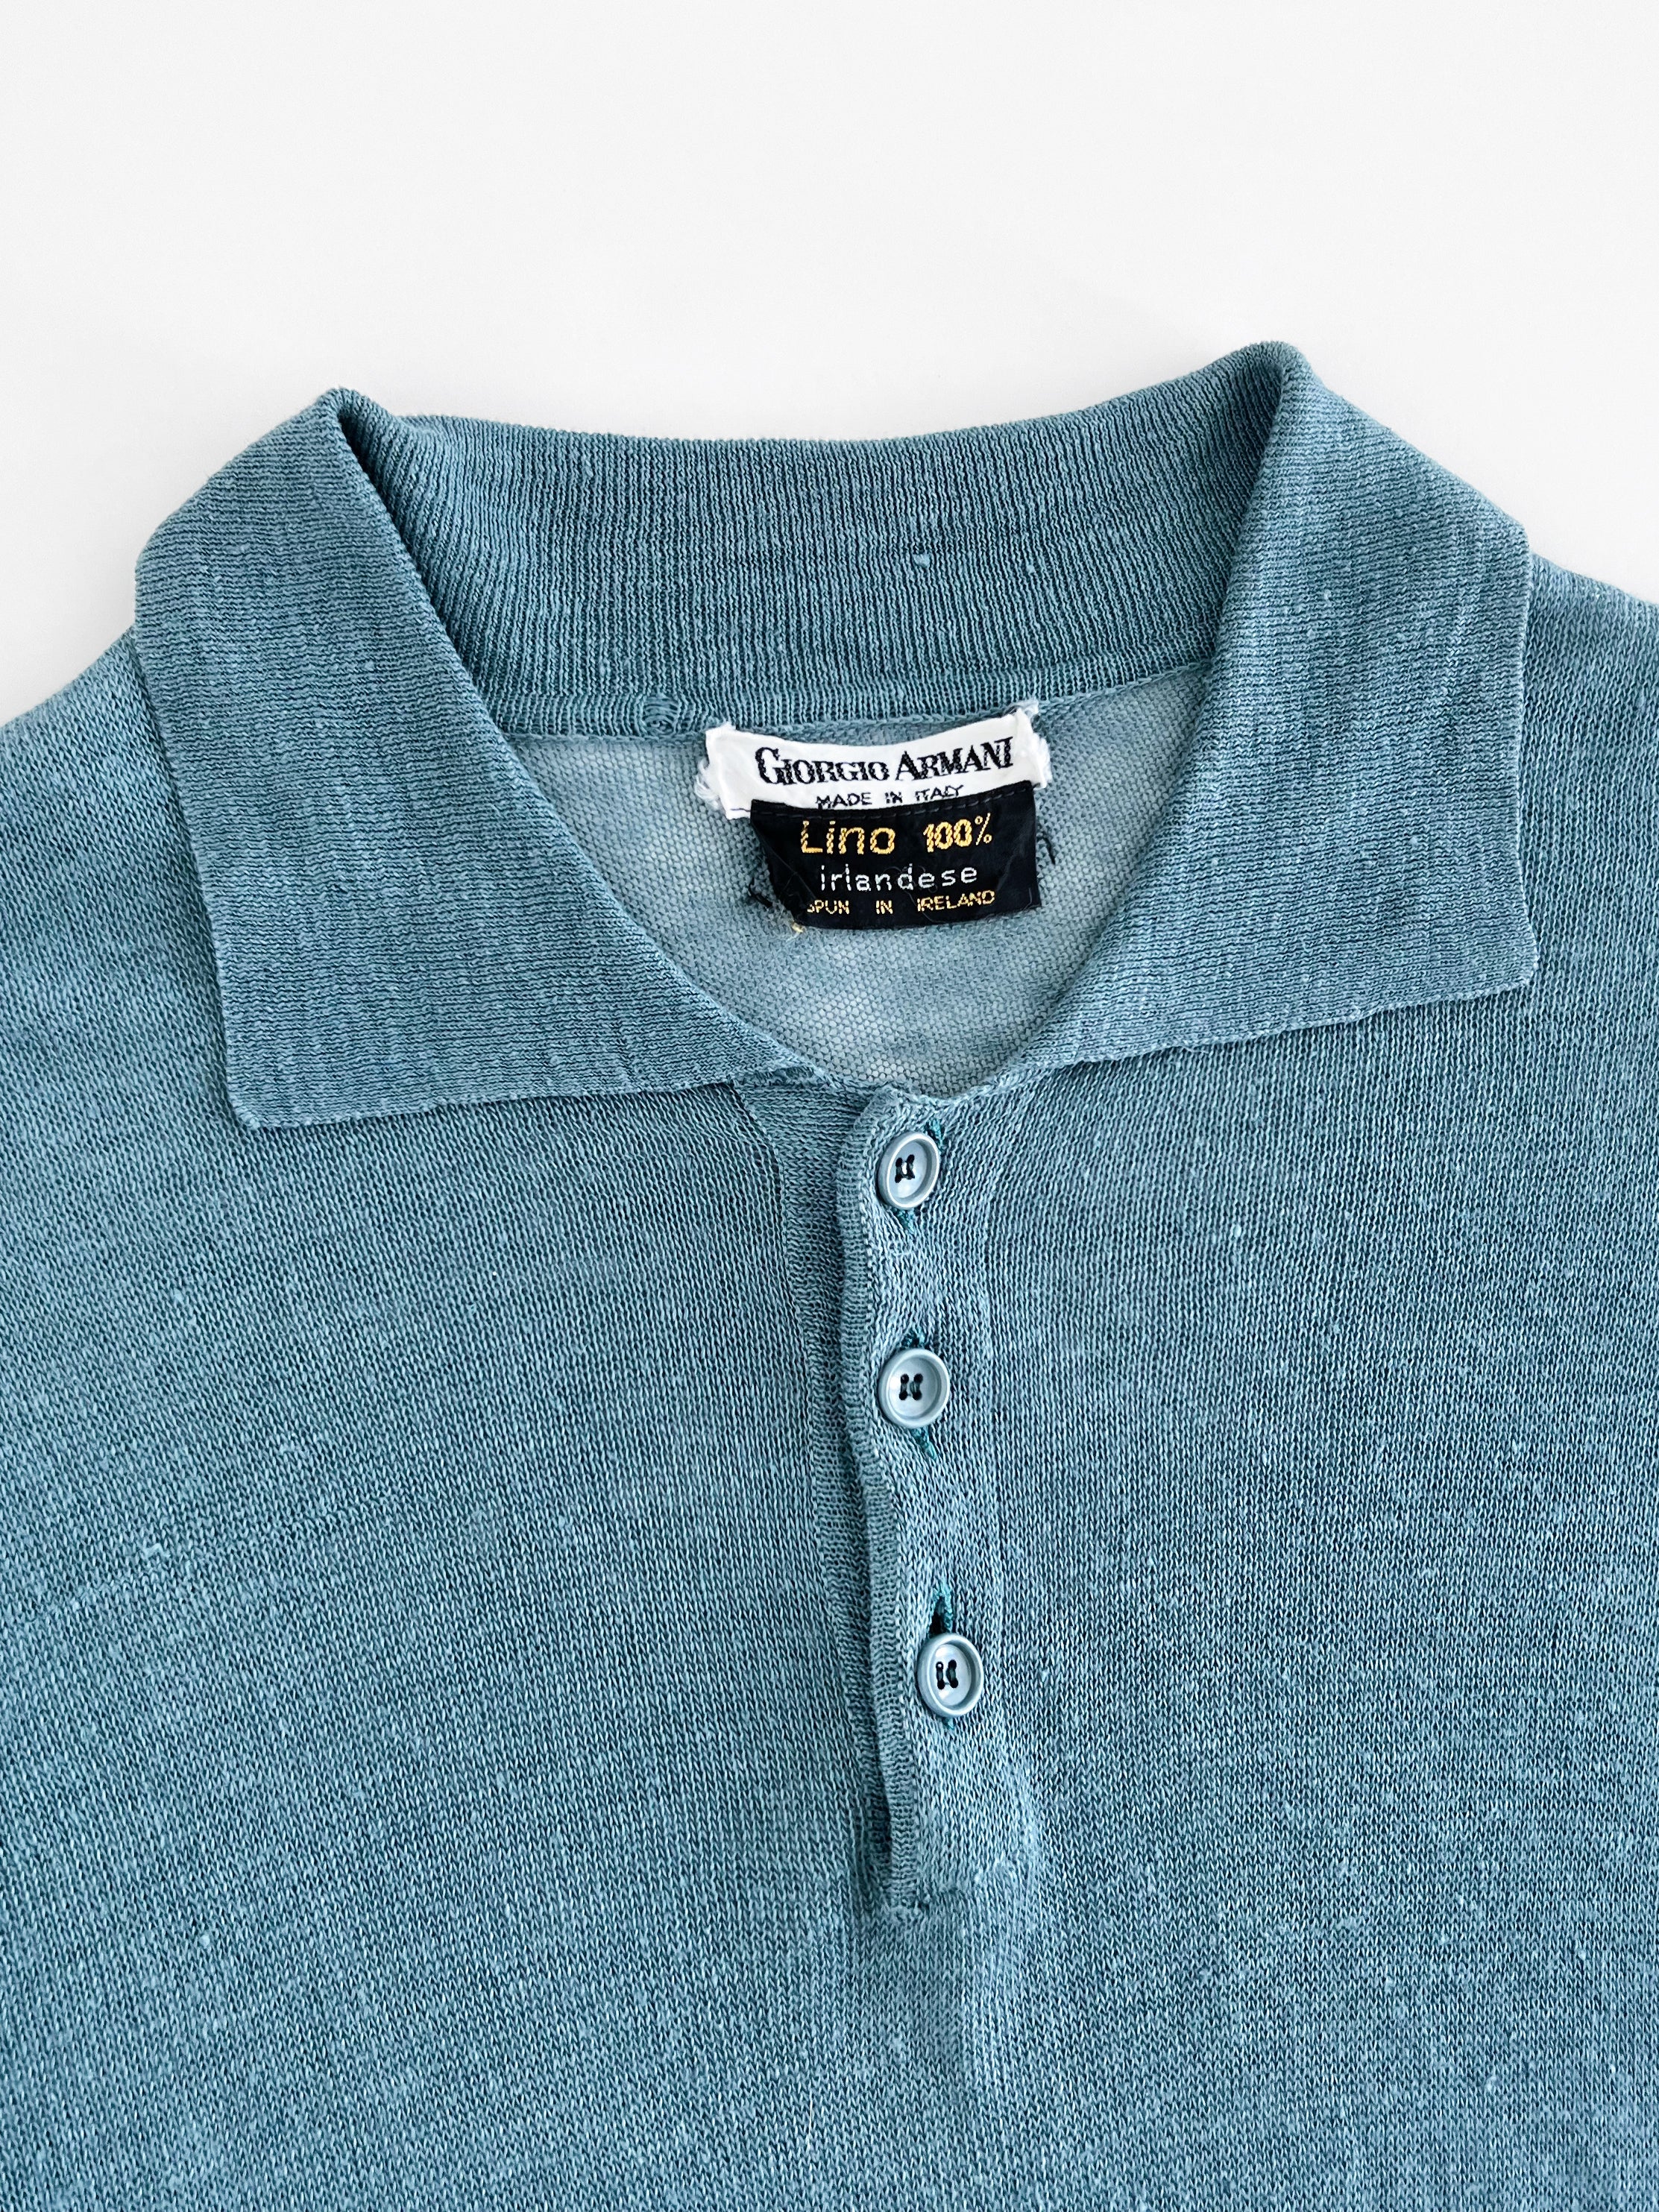 80's Giorgio Armani linen polo shirt